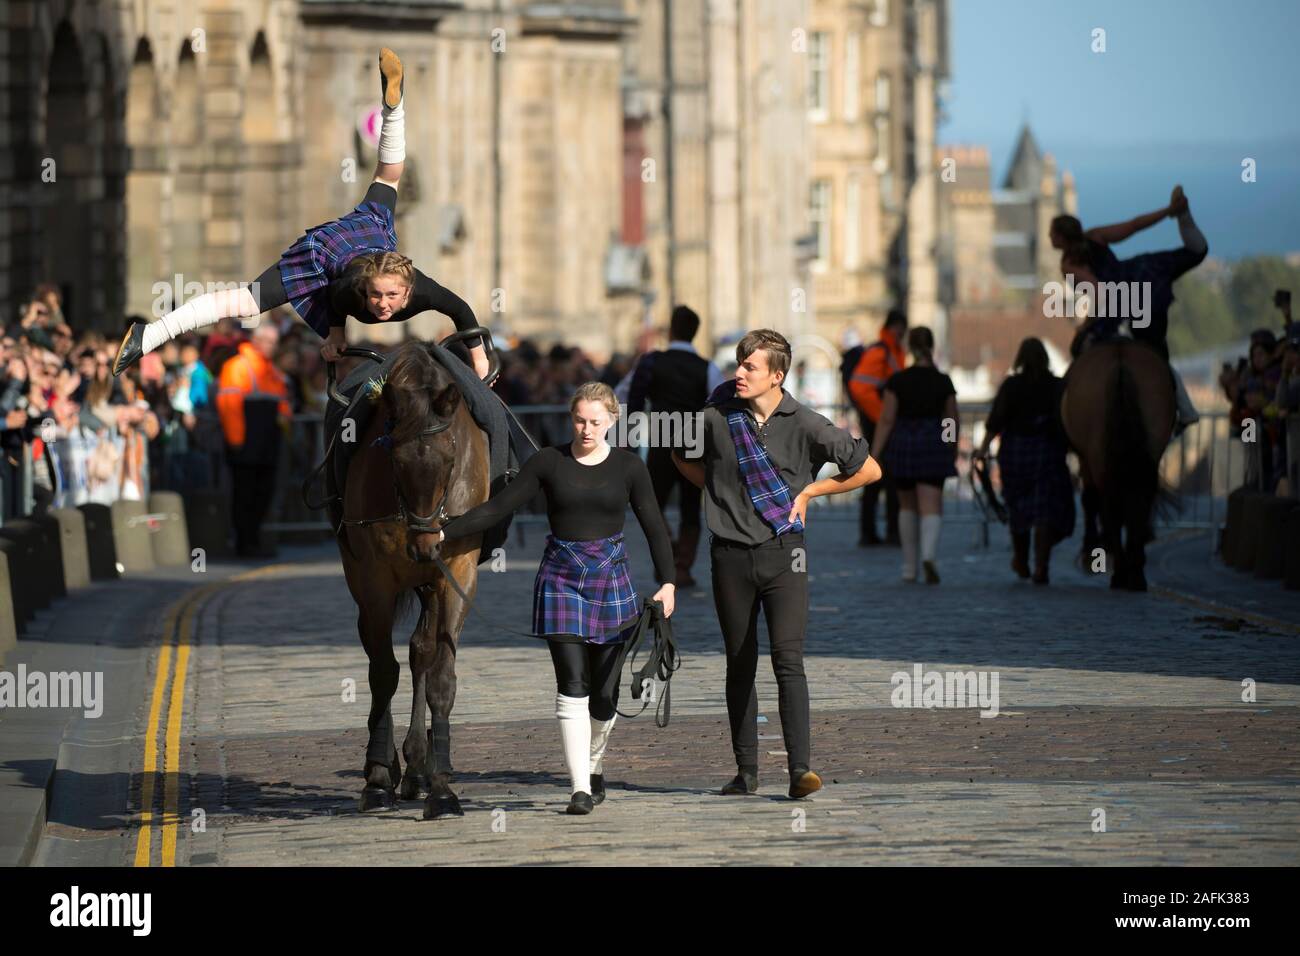 A cavallo delle Marche cerimonia sulla Royal Mile di Edimburgo. La manifestazione ha avuto luogo nel centro storico della città ed è stato il culmine della comune circoscrizioni in cui gli uomini e le donne a cavallo controllato i vecchi confini tra città Credito: Euan Cherry Foto Stock